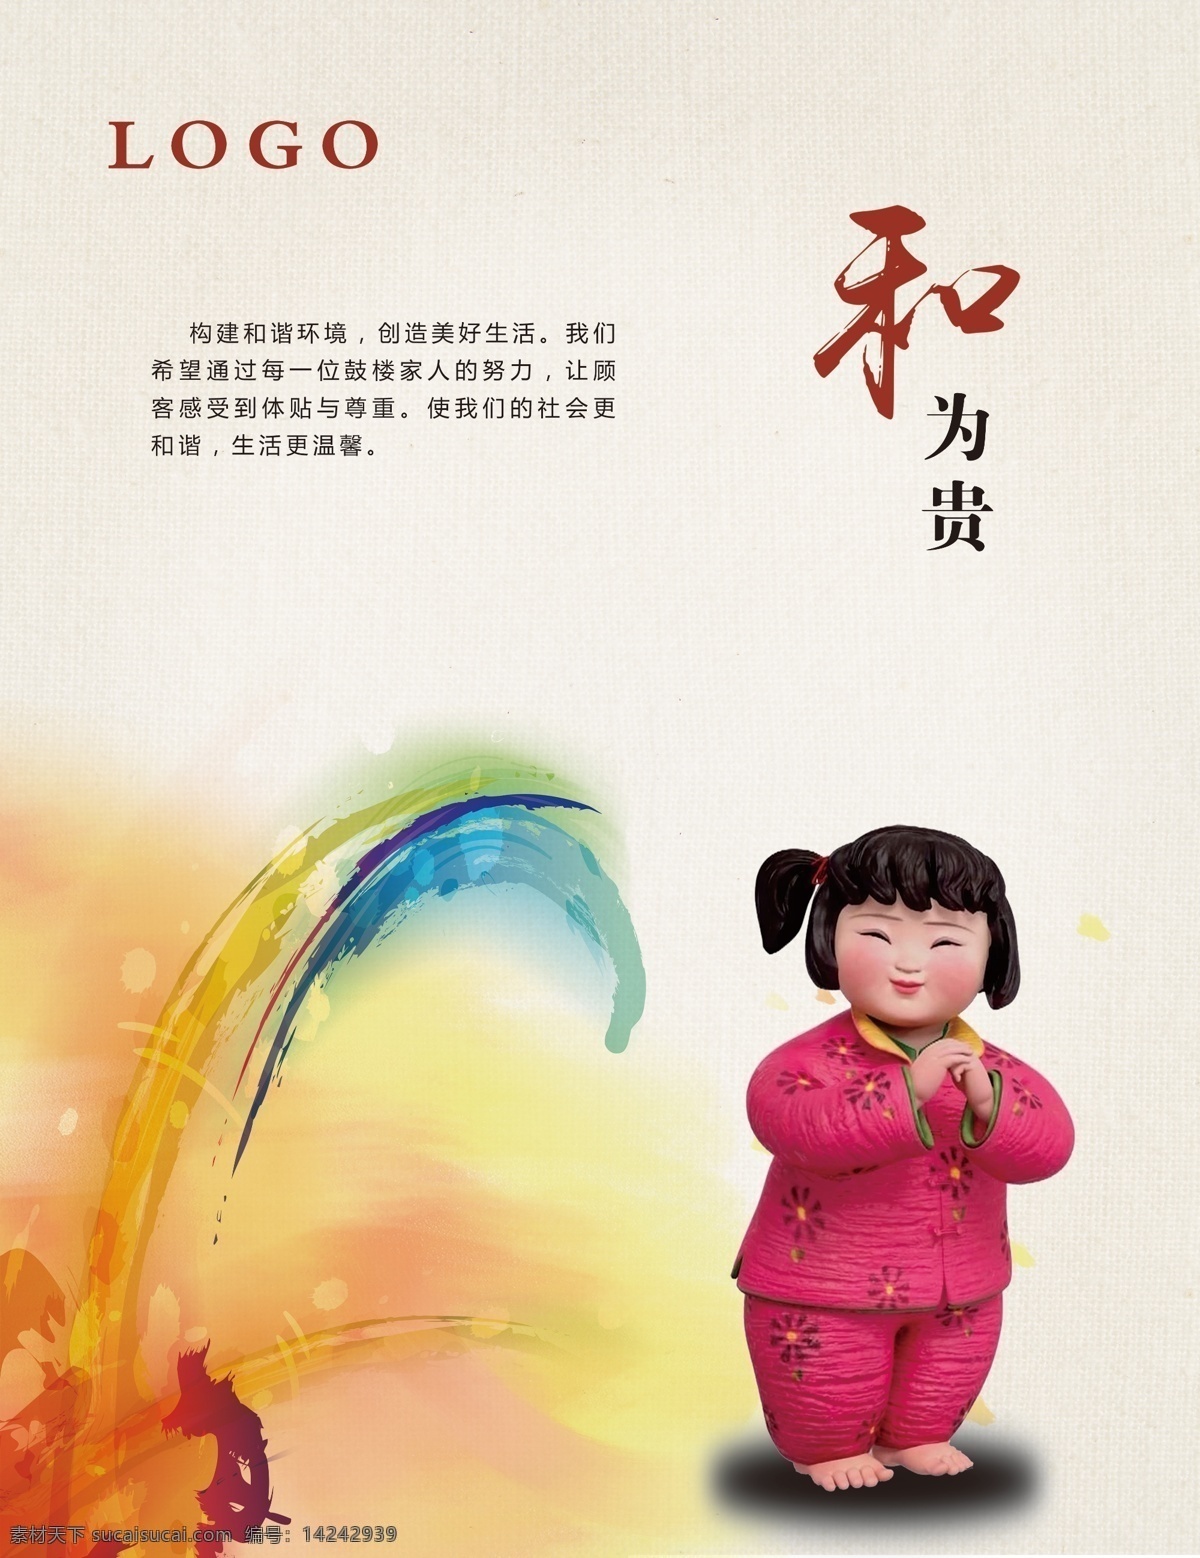 中国梦 中国娃娃 公益 中国风 梦想 创城 文明 标志图标 其他图标